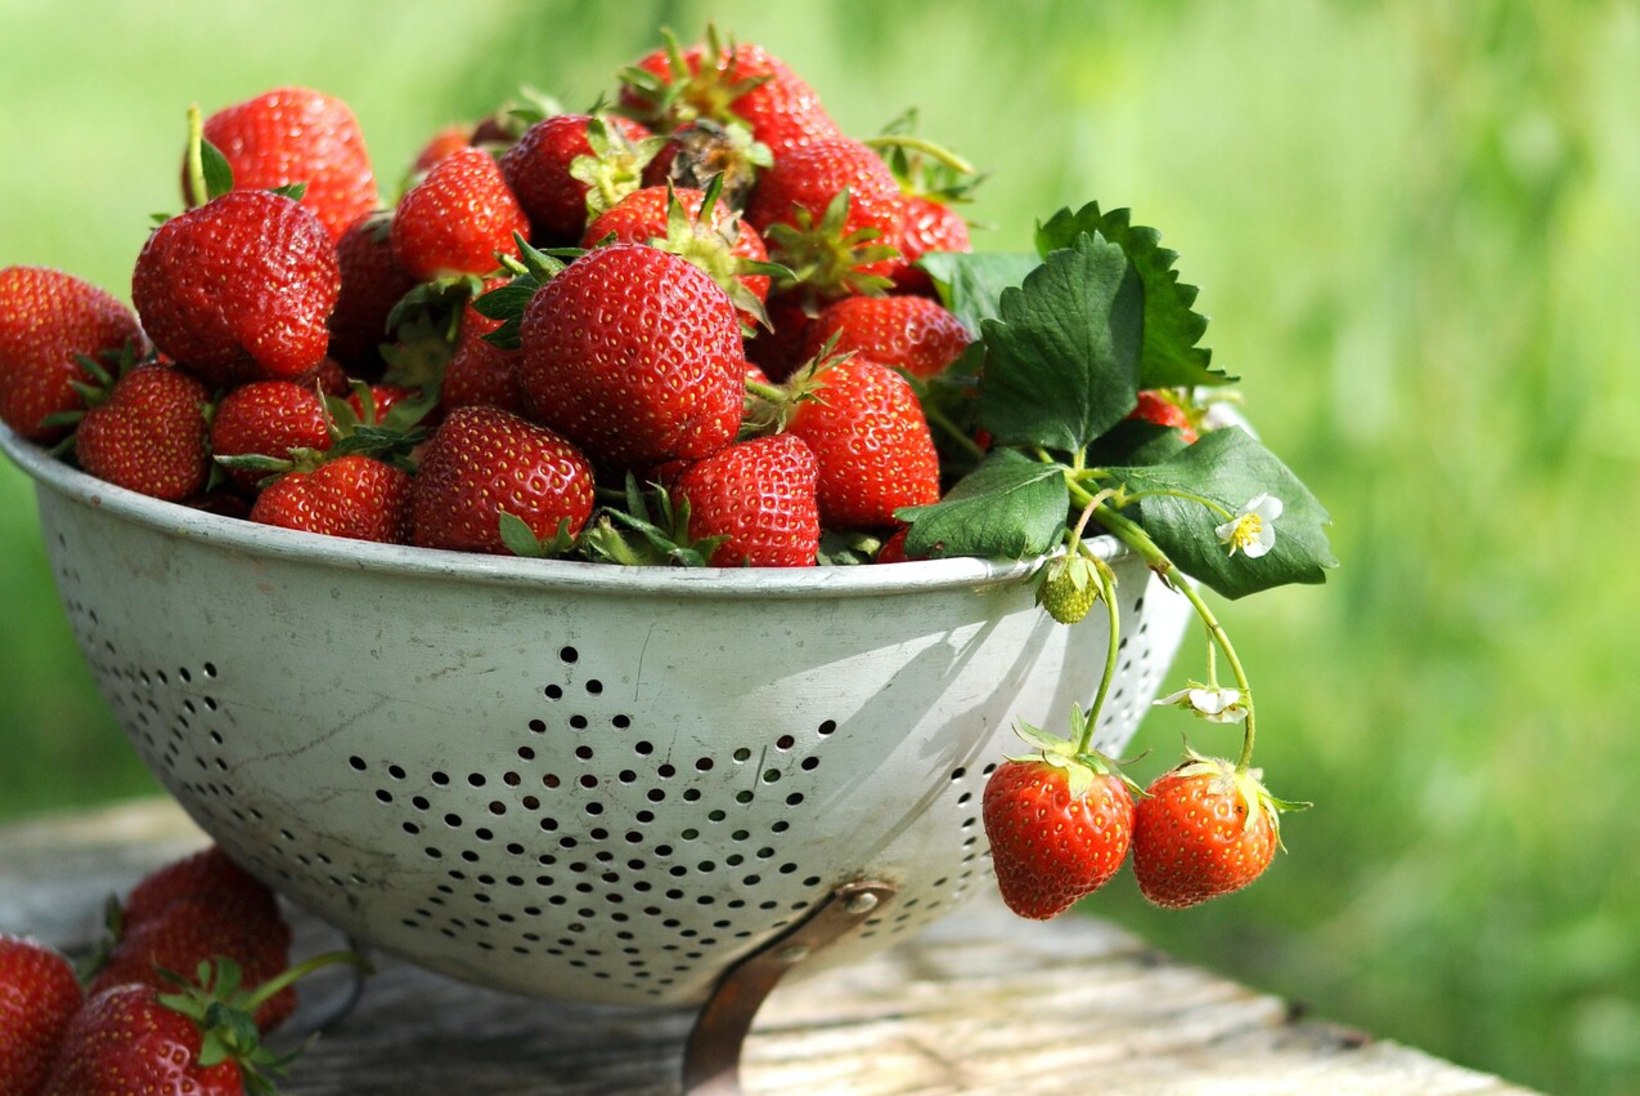 NÄDALAMENÜÜ | 28. juuni – 4. juuli: kuidas maasikaid argitoitudes rohkem kasutada